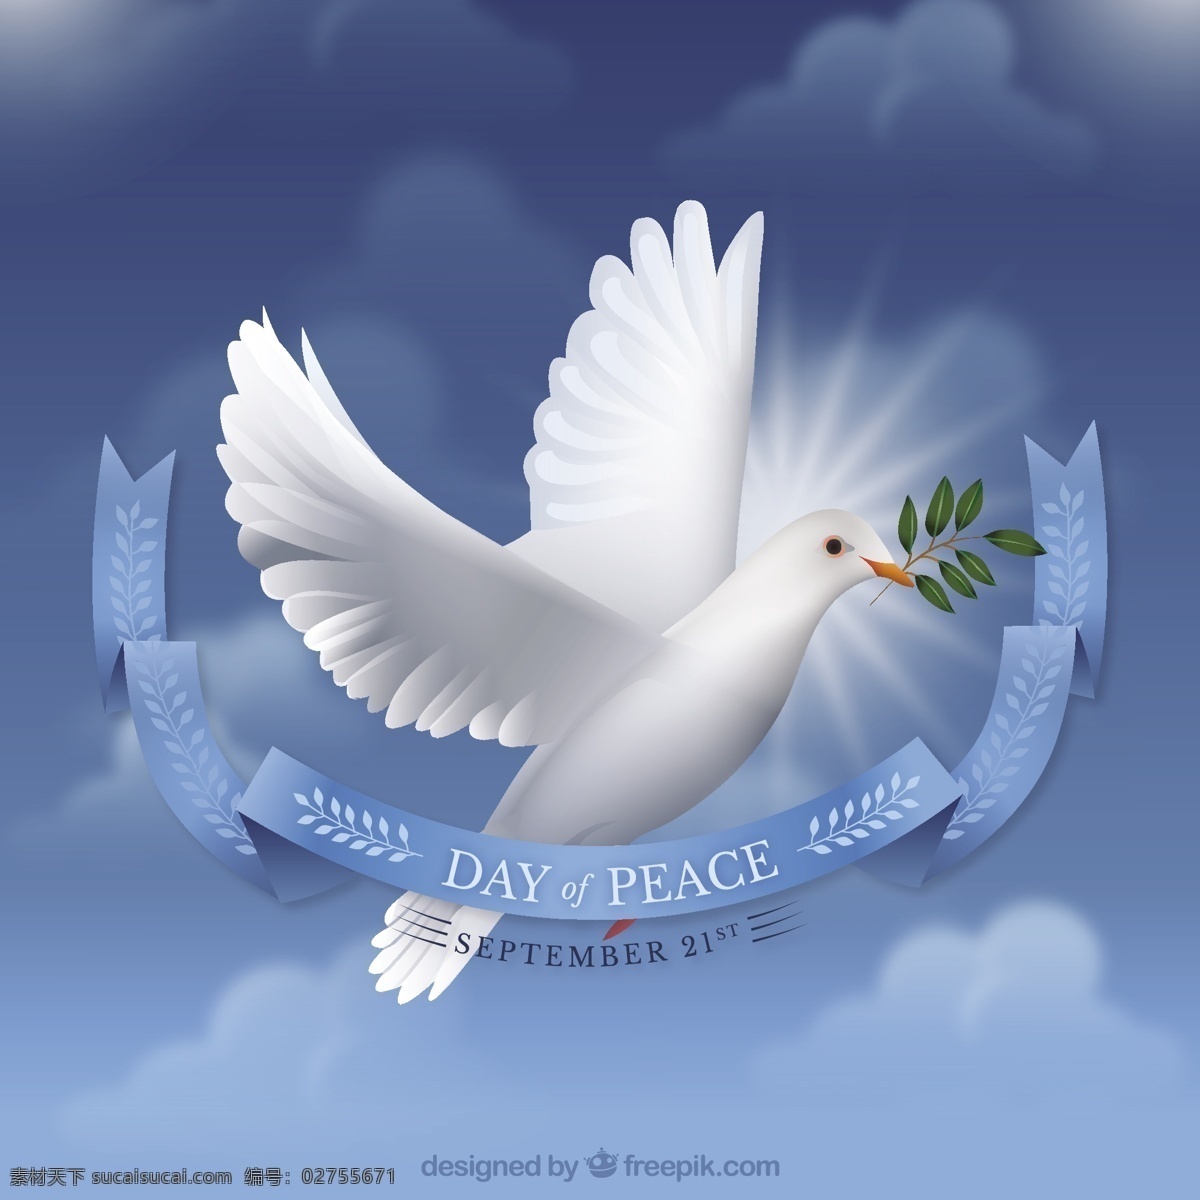 和平日 背景 海报 爱 鸟 世界 天空 假日 和平 鸽子 自由 爱鸟 爱背景 希望 国际 天 信仰 九月 人道主义 蓝色